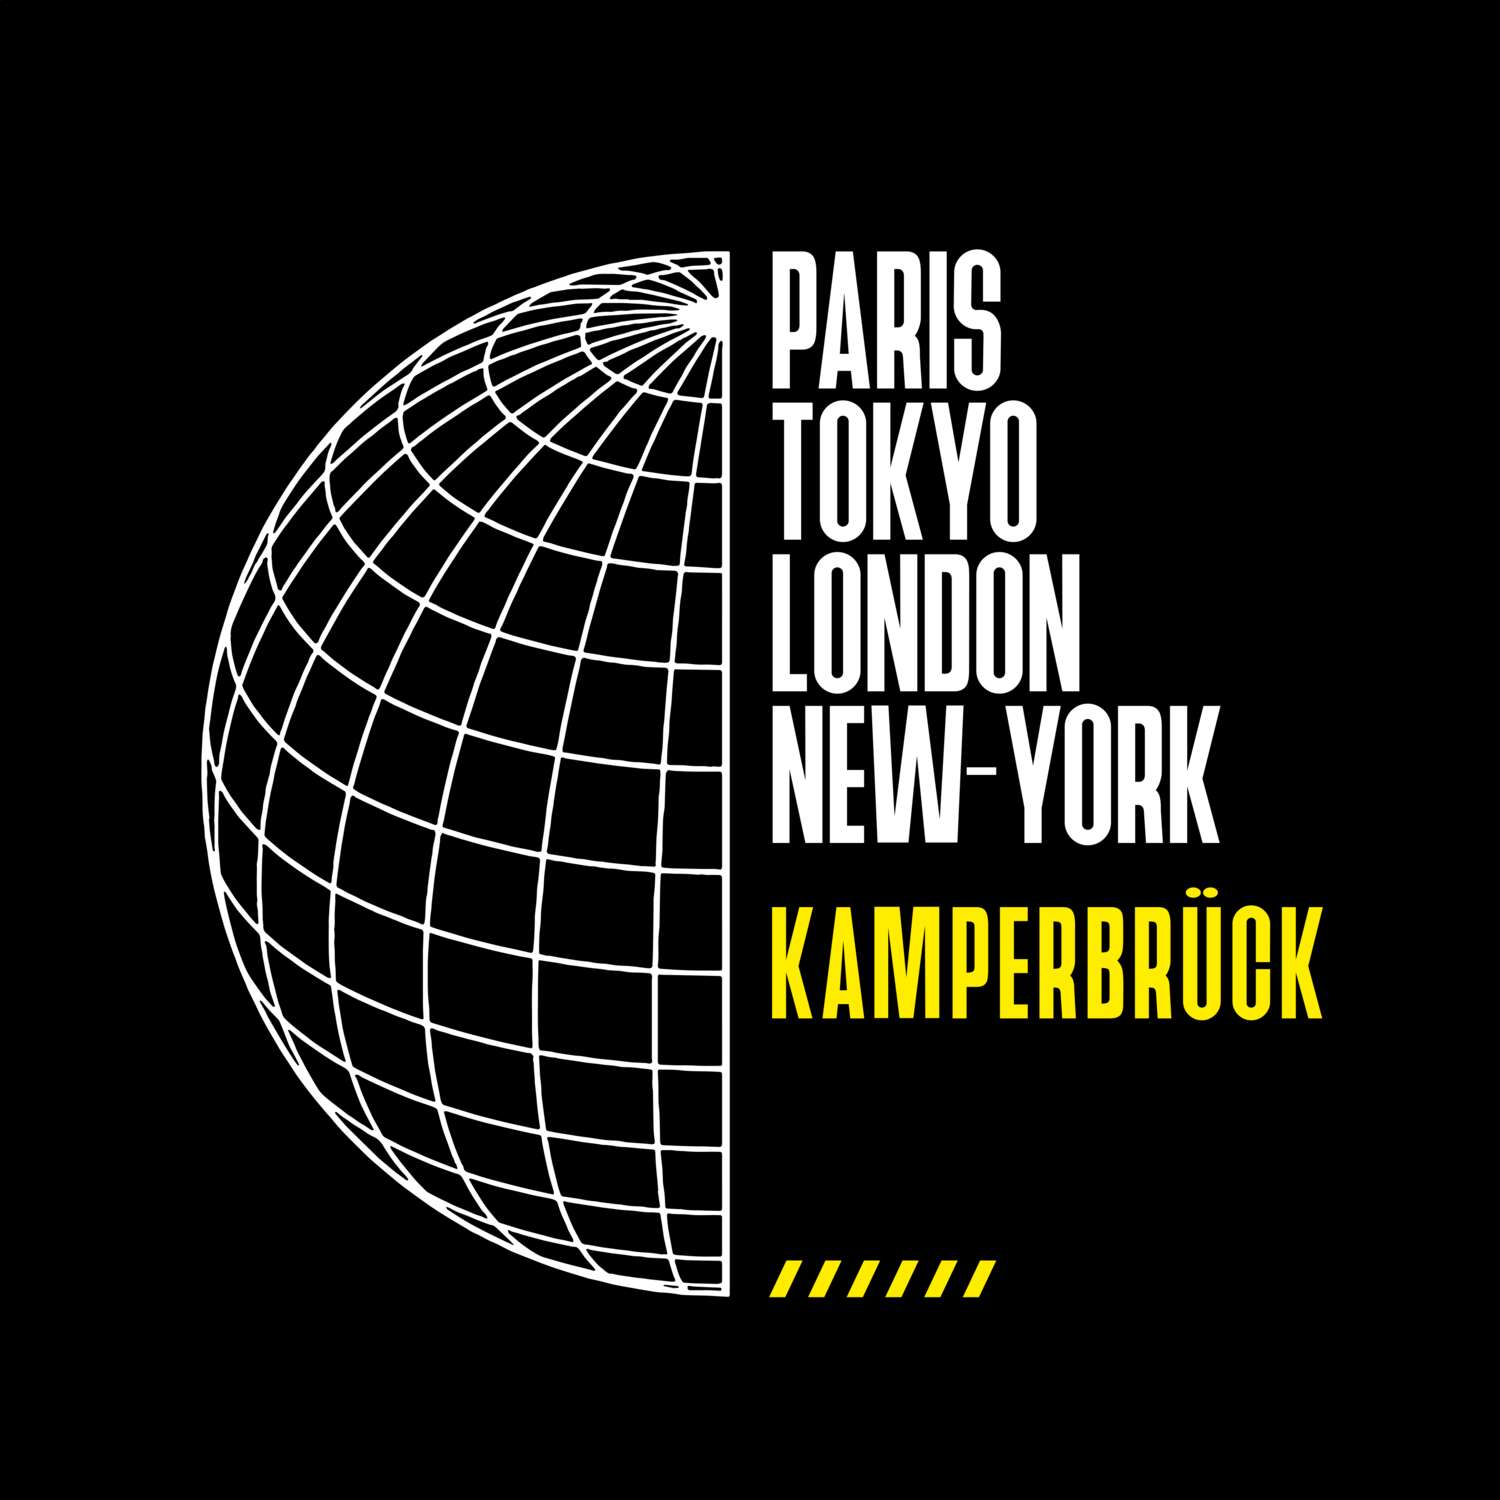 Kamperbrück T-Shirt »Paris Tokyo London«